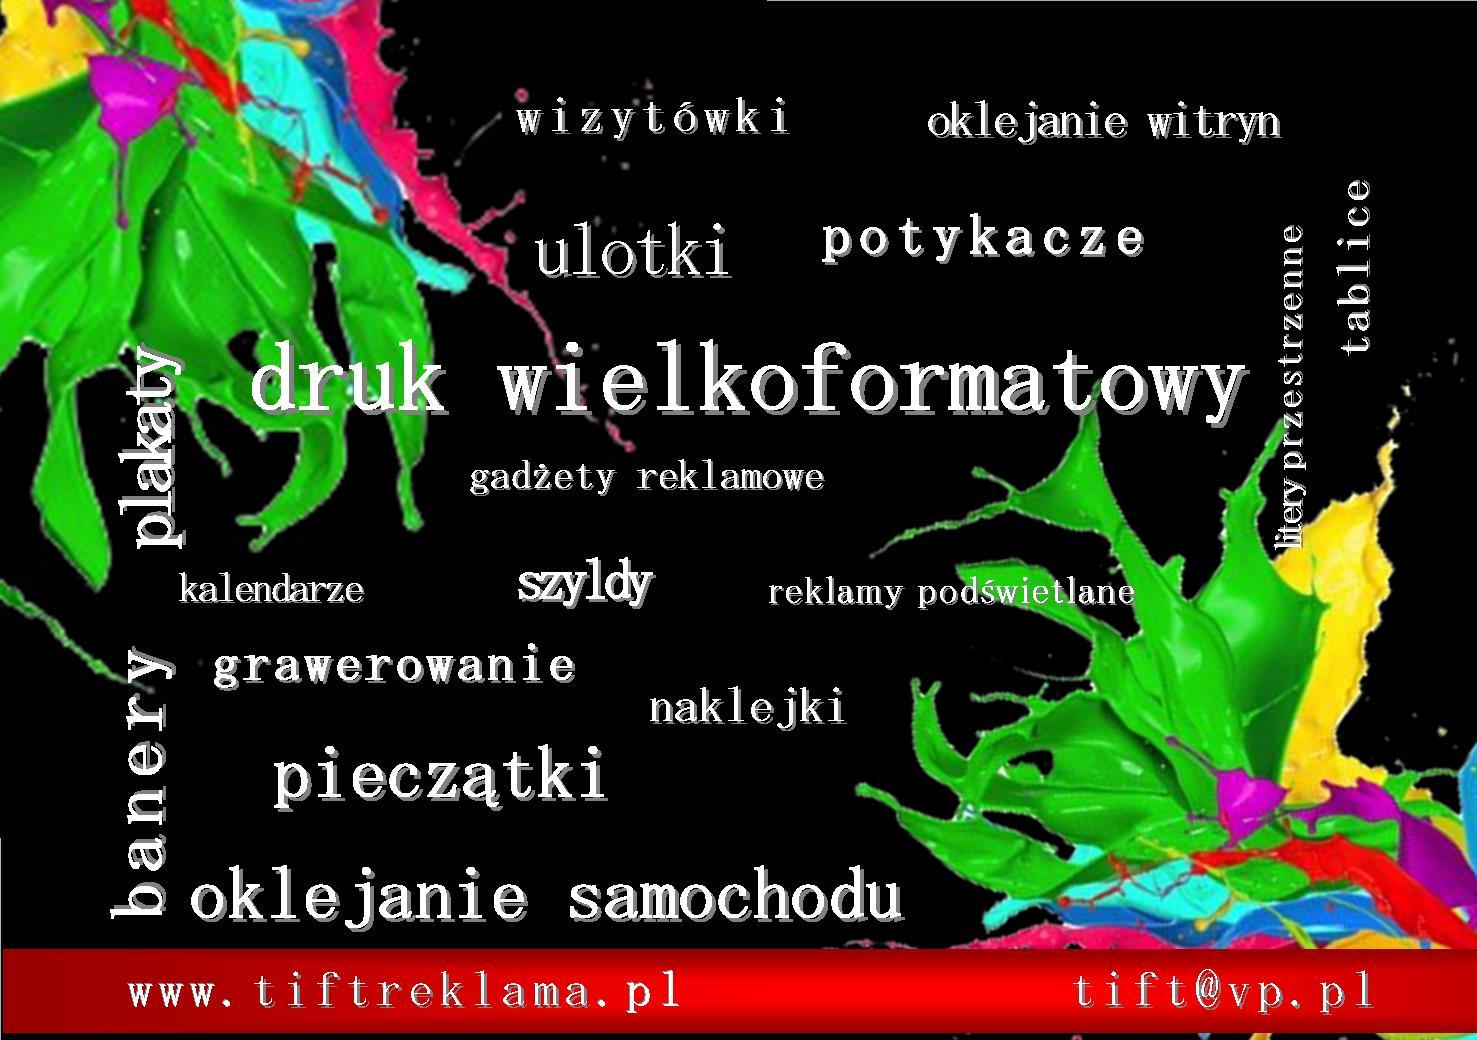 Reklamy, Kutno, Gostynin, Piątek, Krośniewice, Łowicz, łódzkie